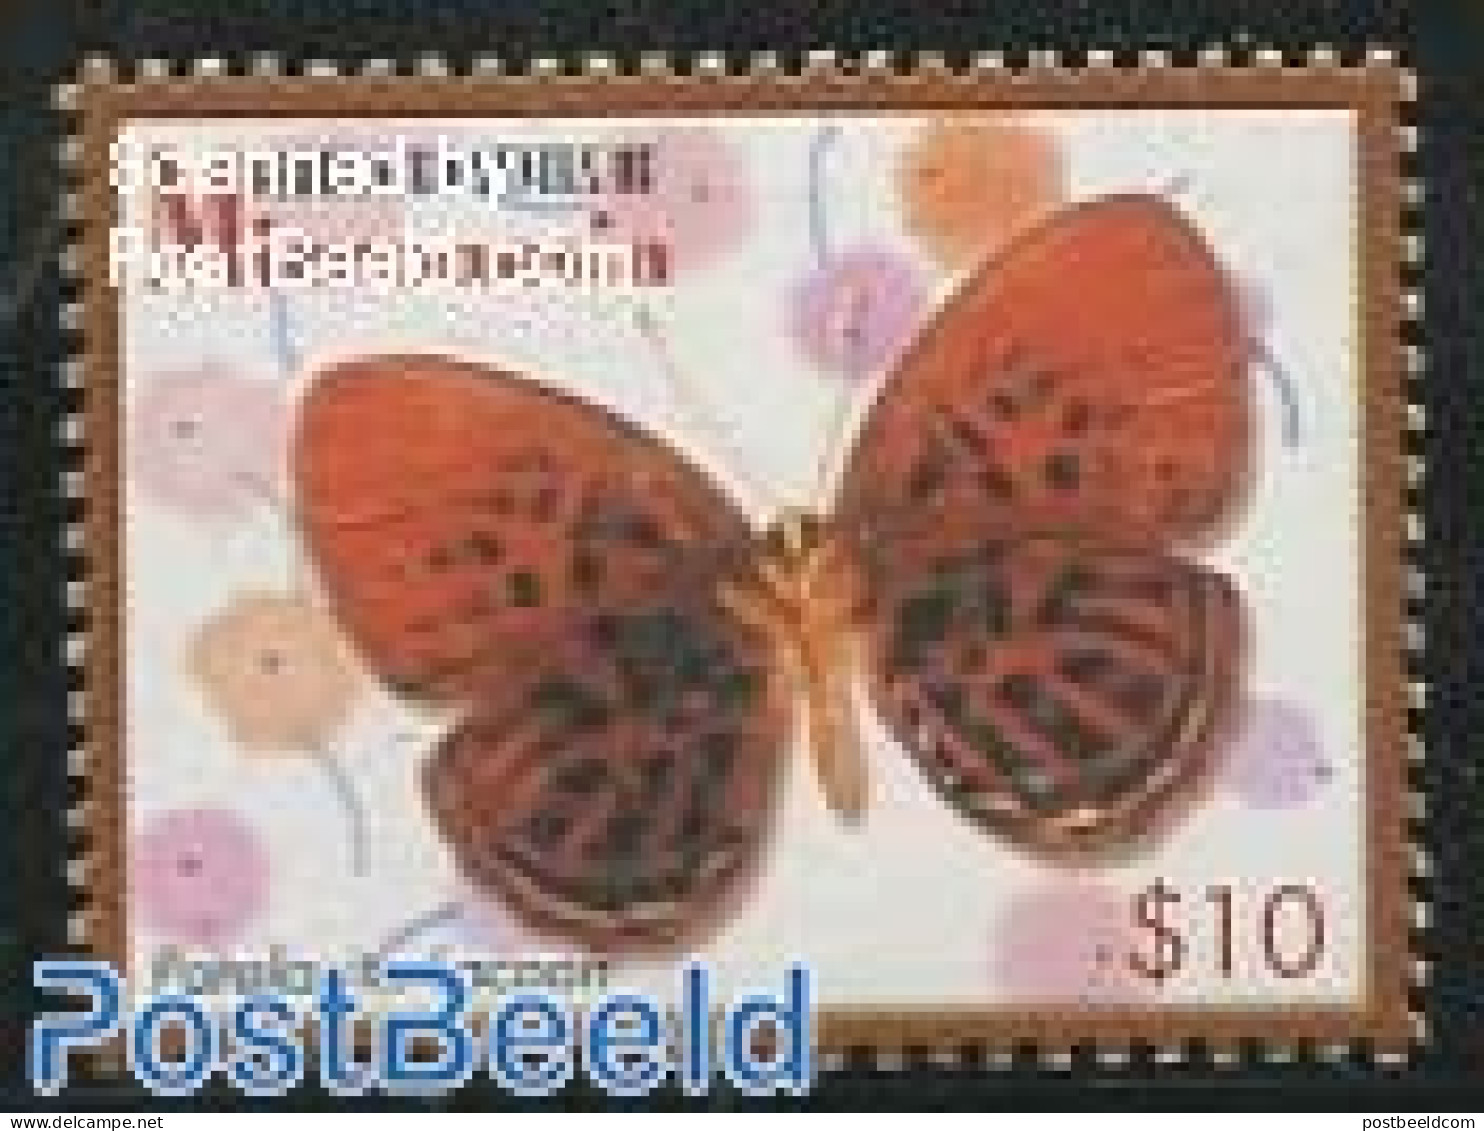 Micronesia 2006 Definitives, Butterflies 1v ($10), Mint NH, Nature - Butterflies - Micronesië